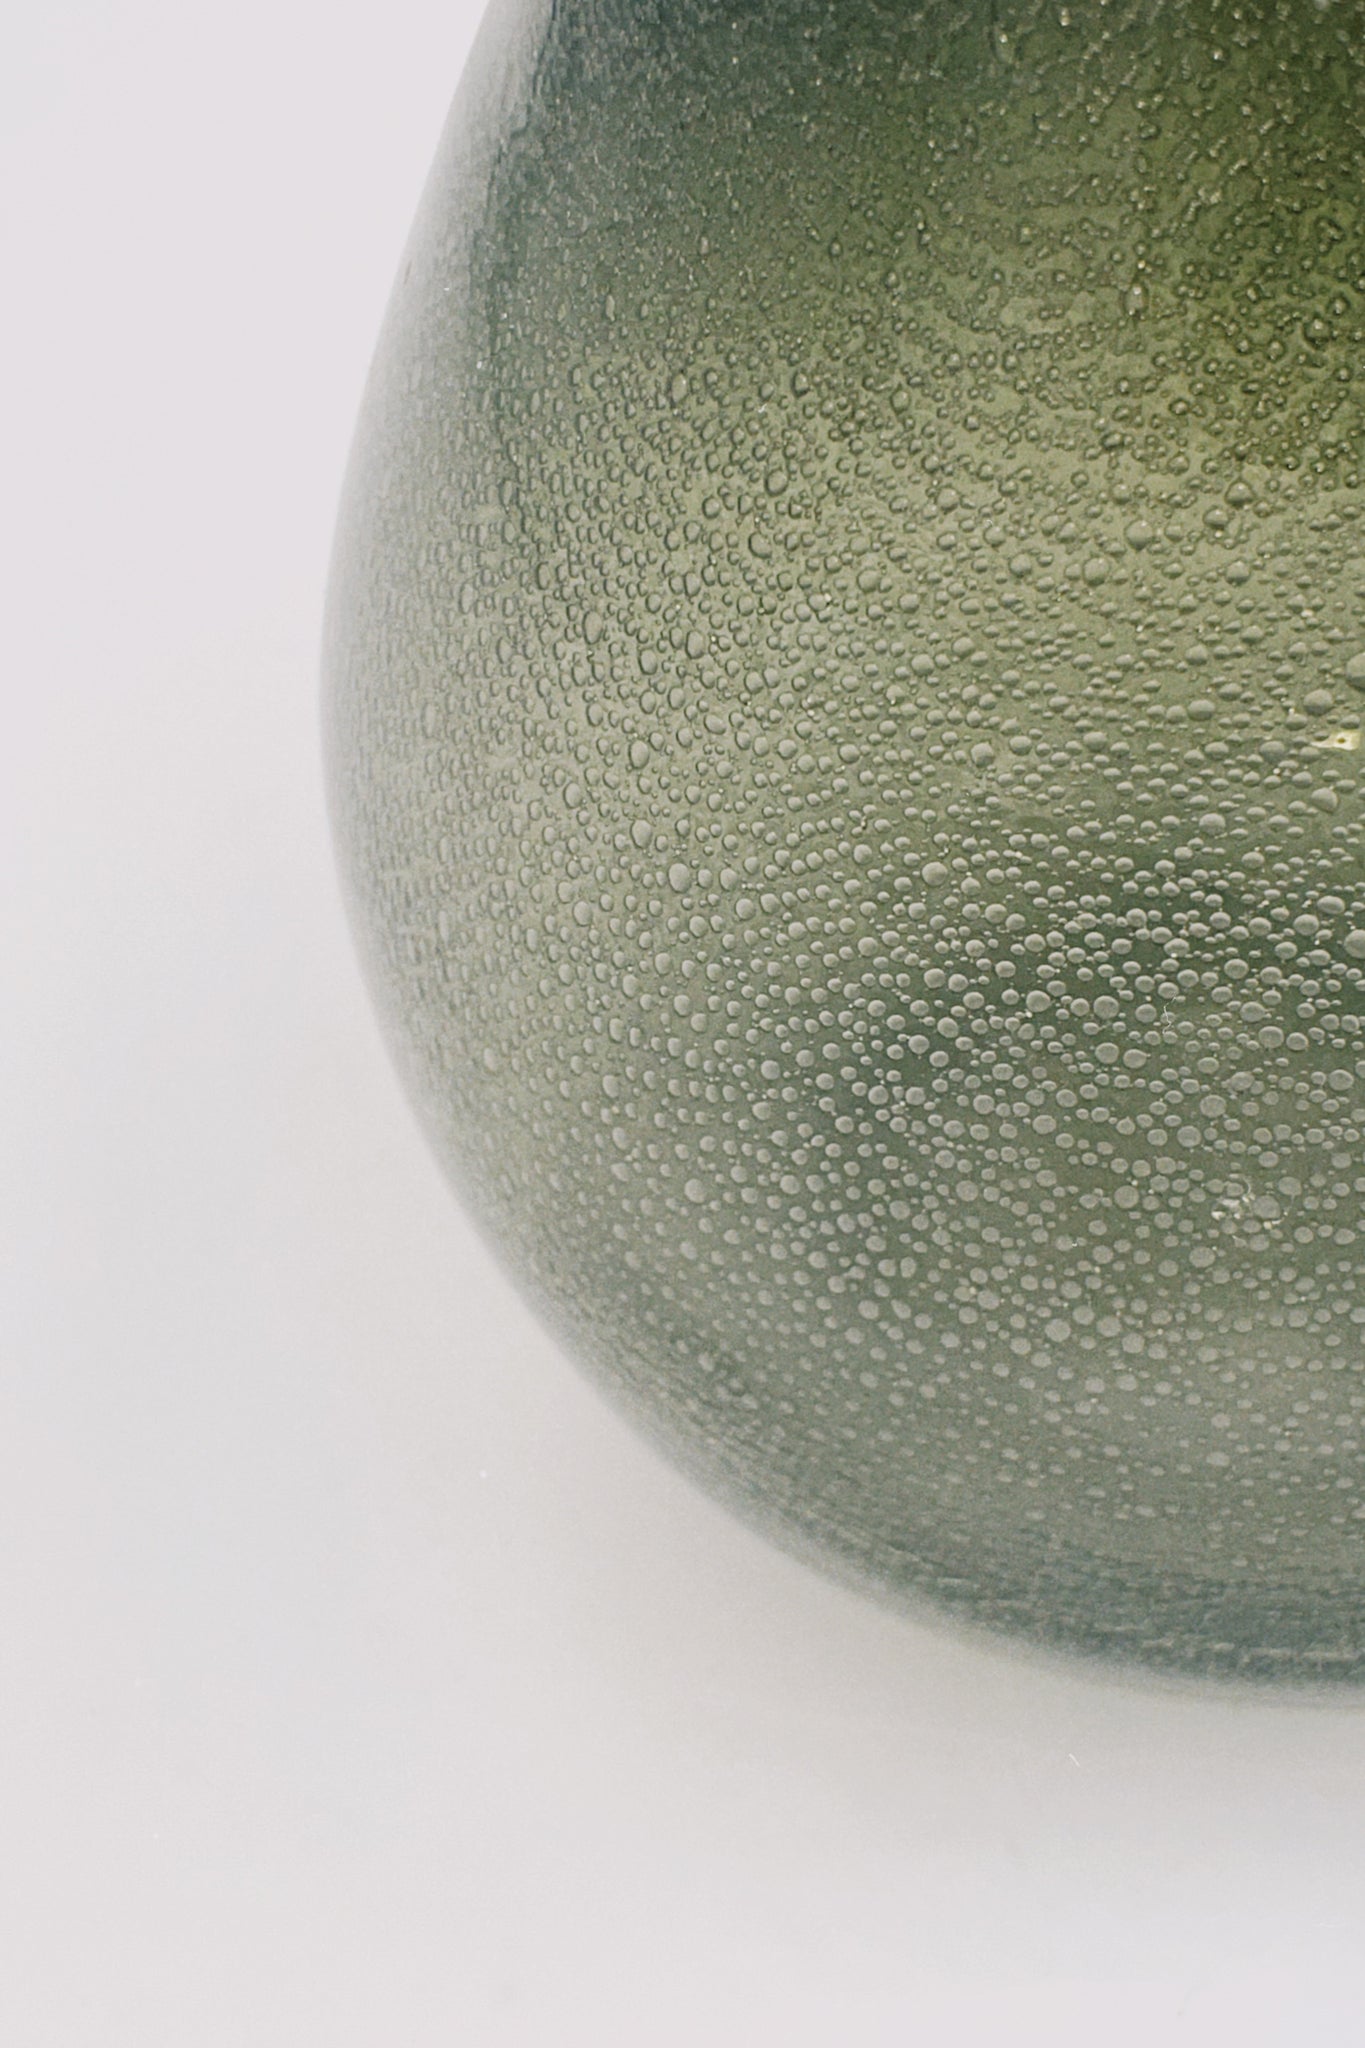 Irregular glass vase